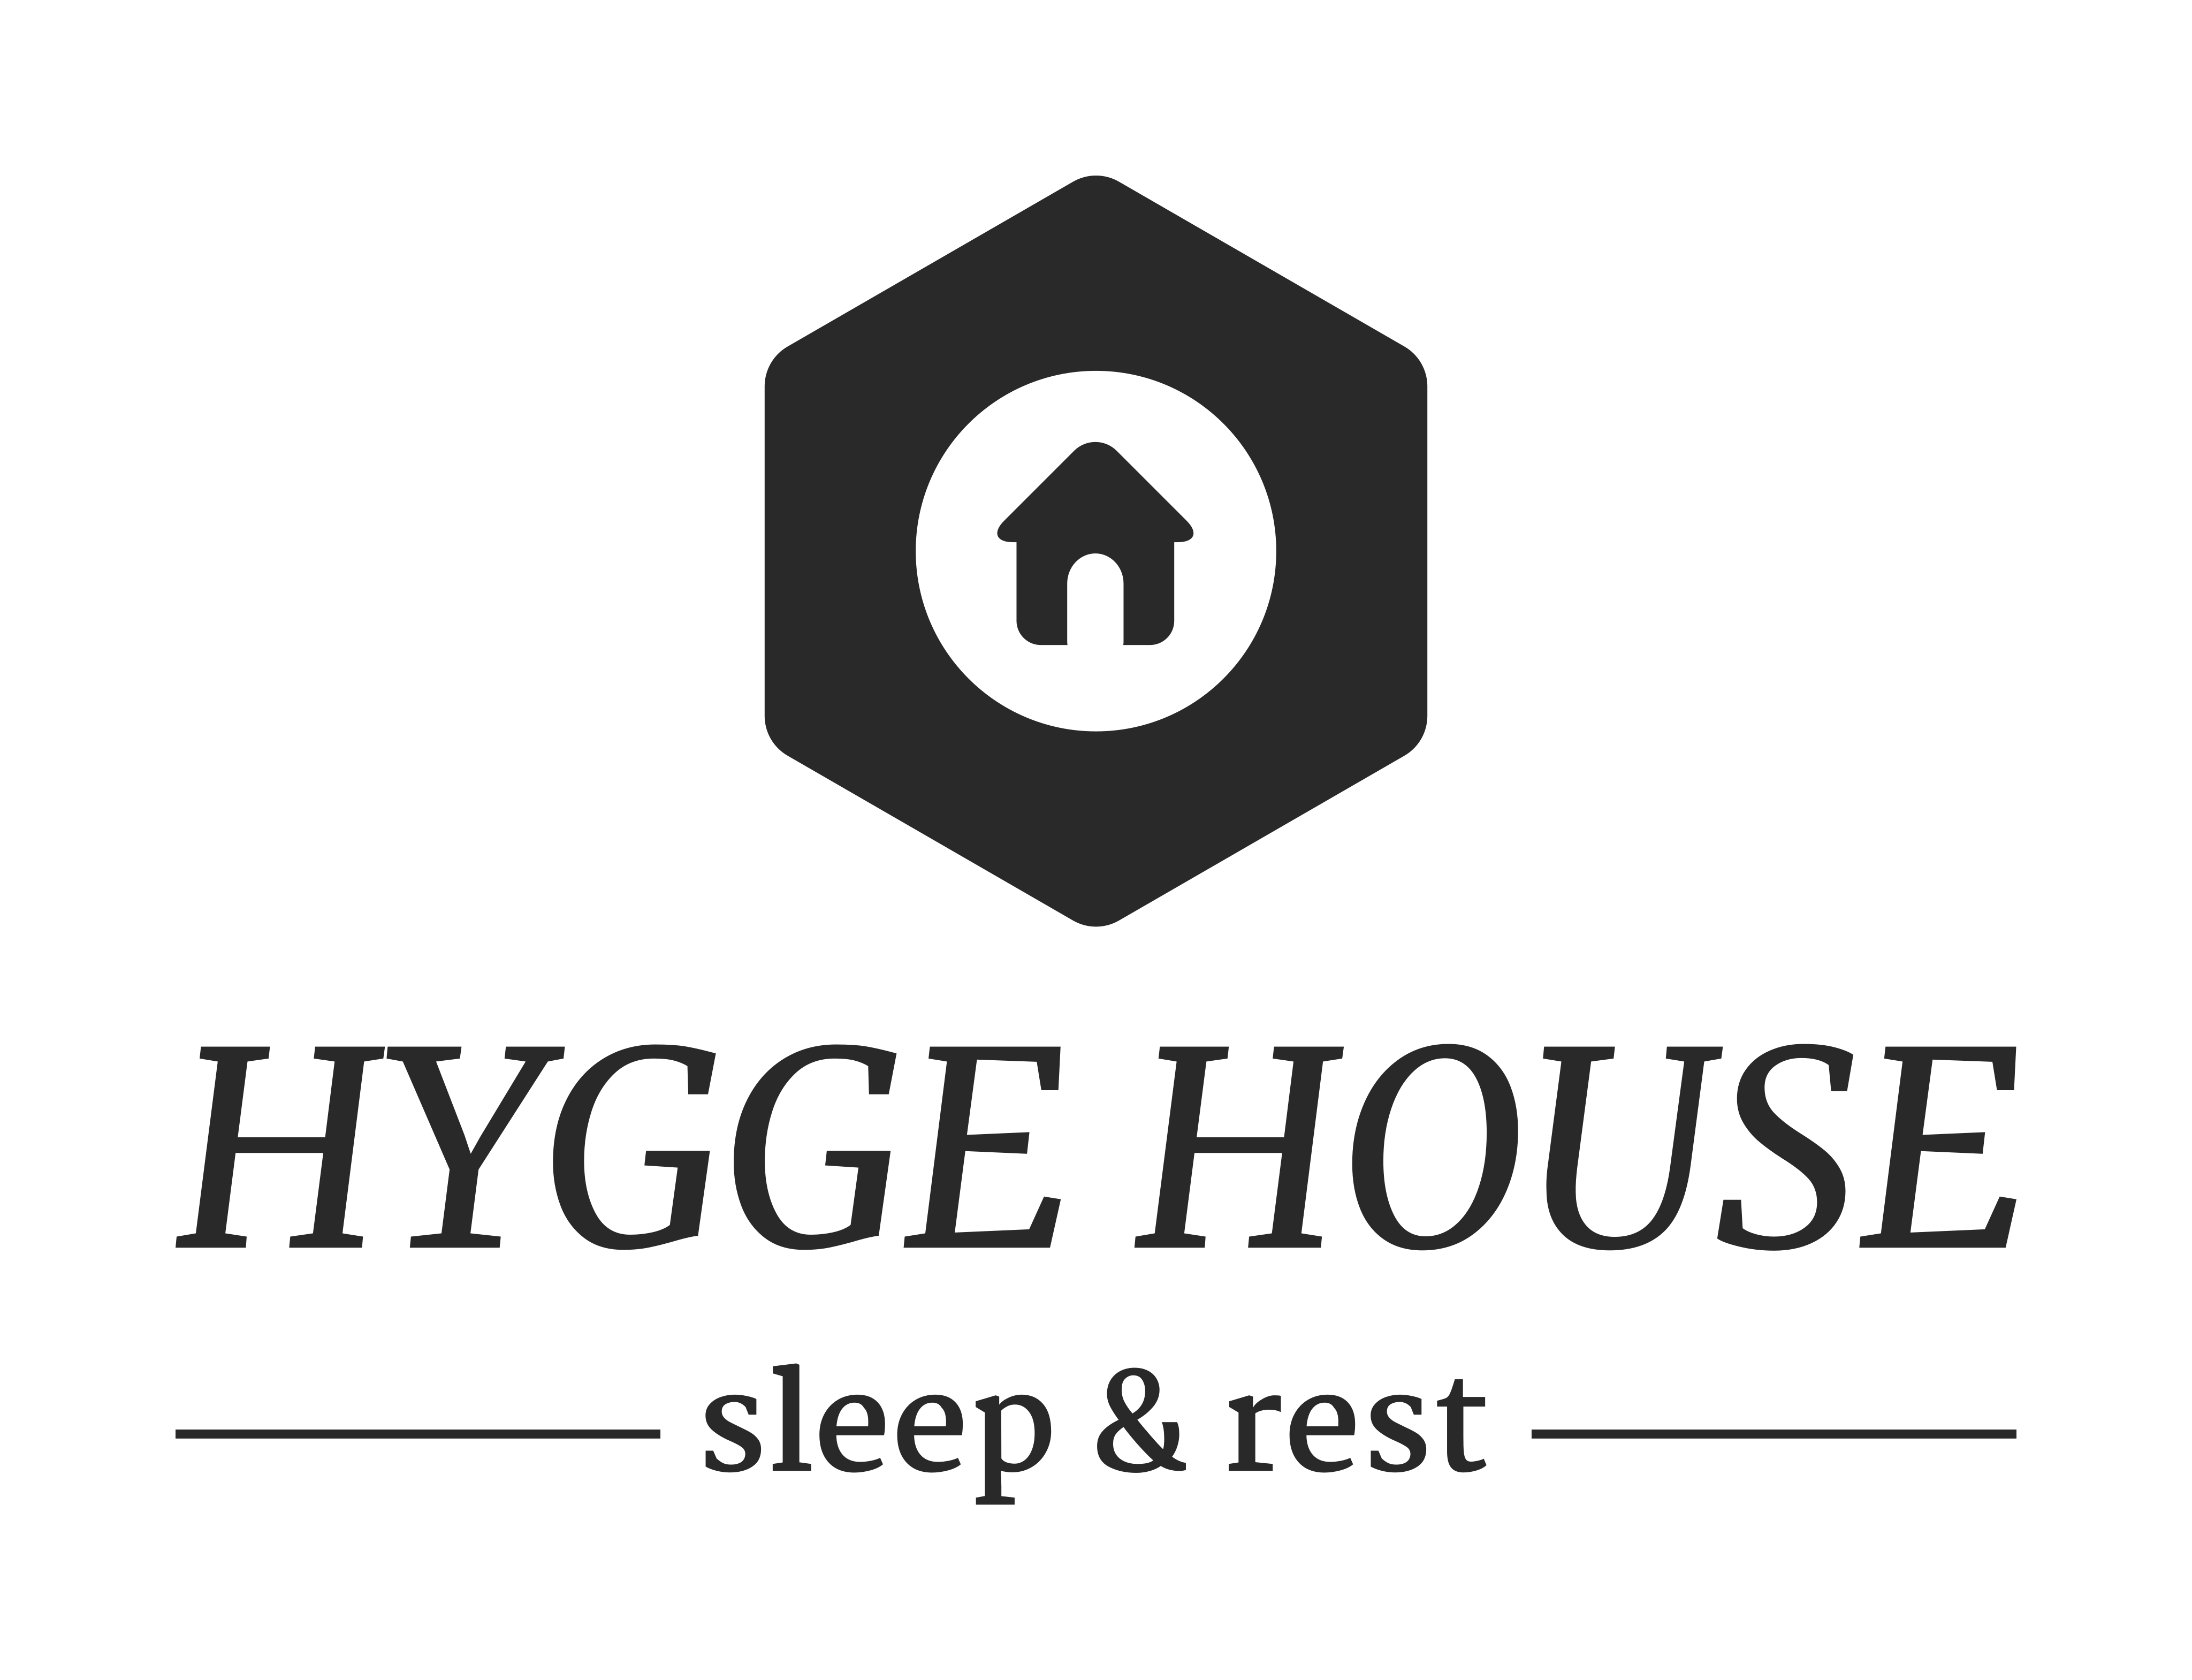 Hygge House - Sleep & Rest